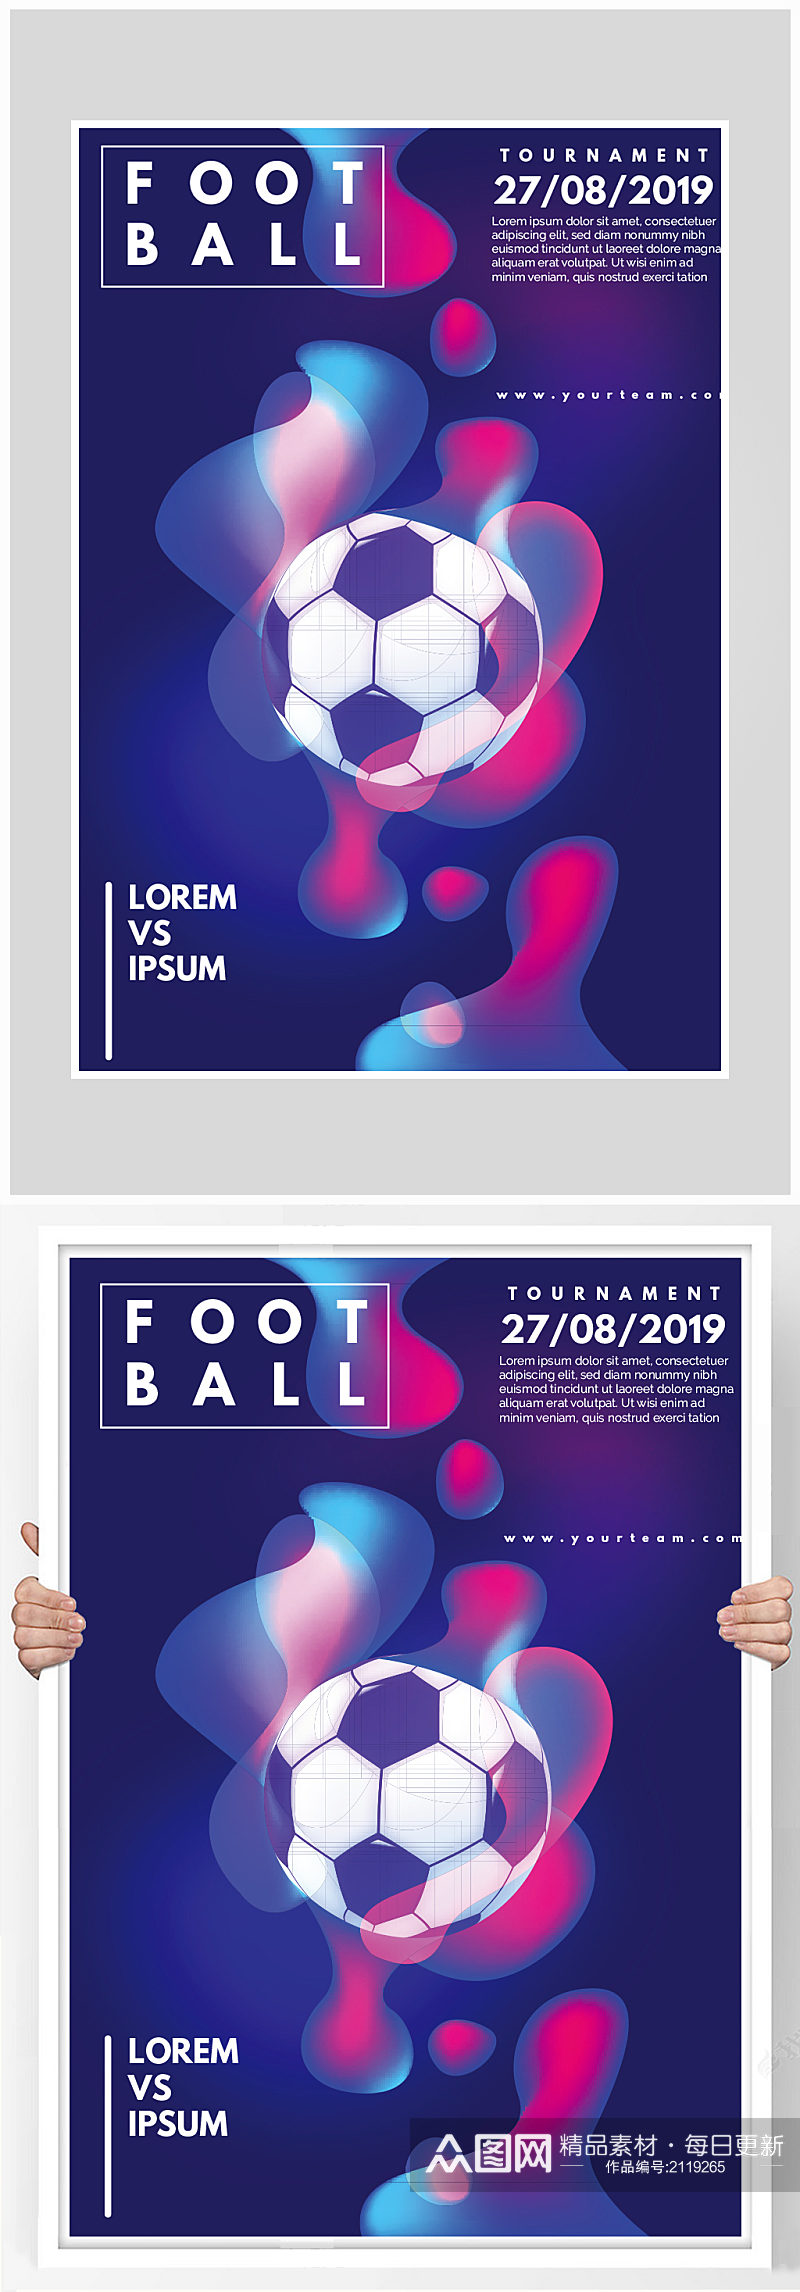 创意质感足球炫酷比赛海报素材